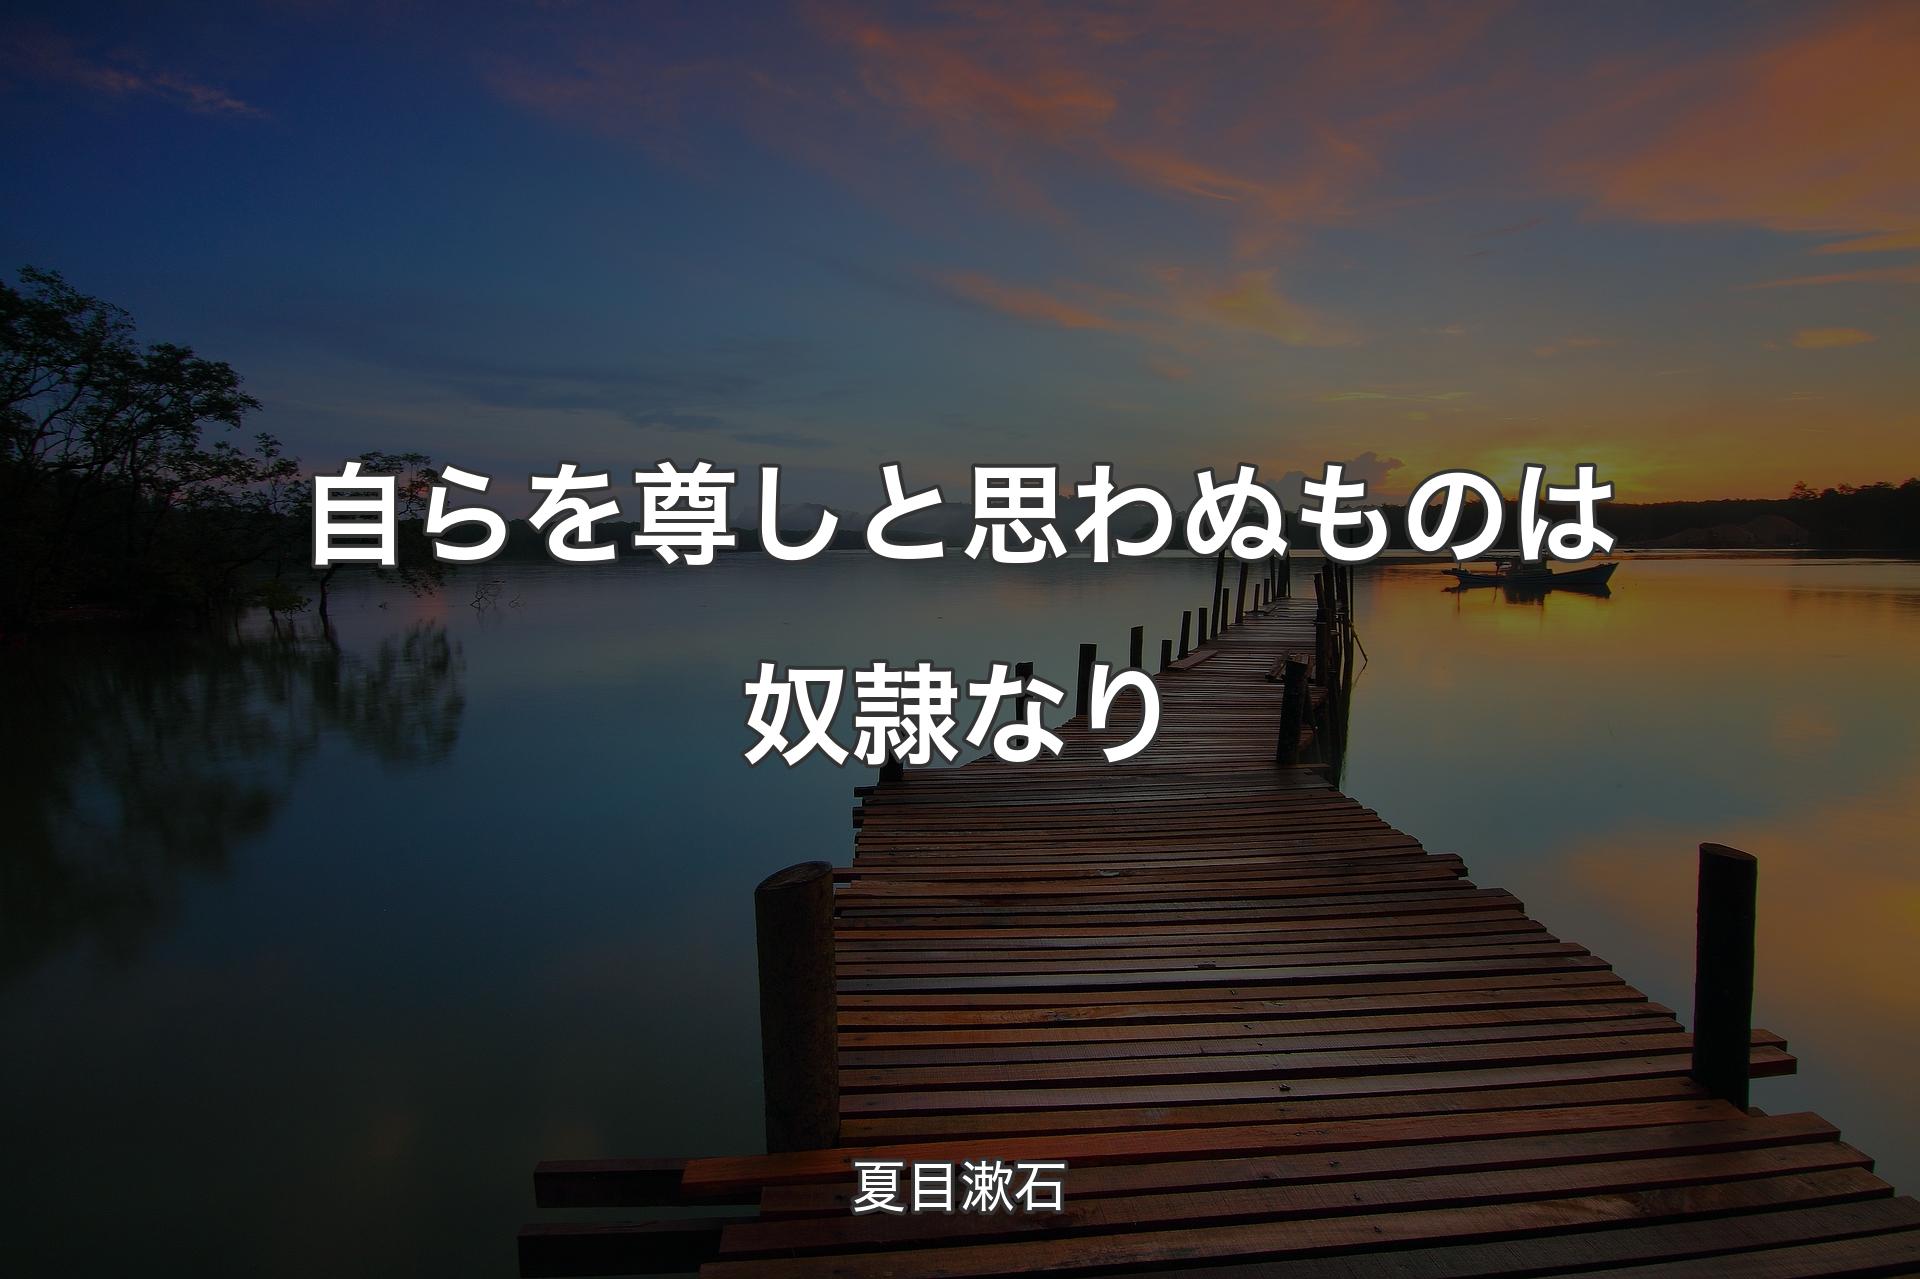 自らを尊しと思わぬものは奴隷なり - 夏目漱石